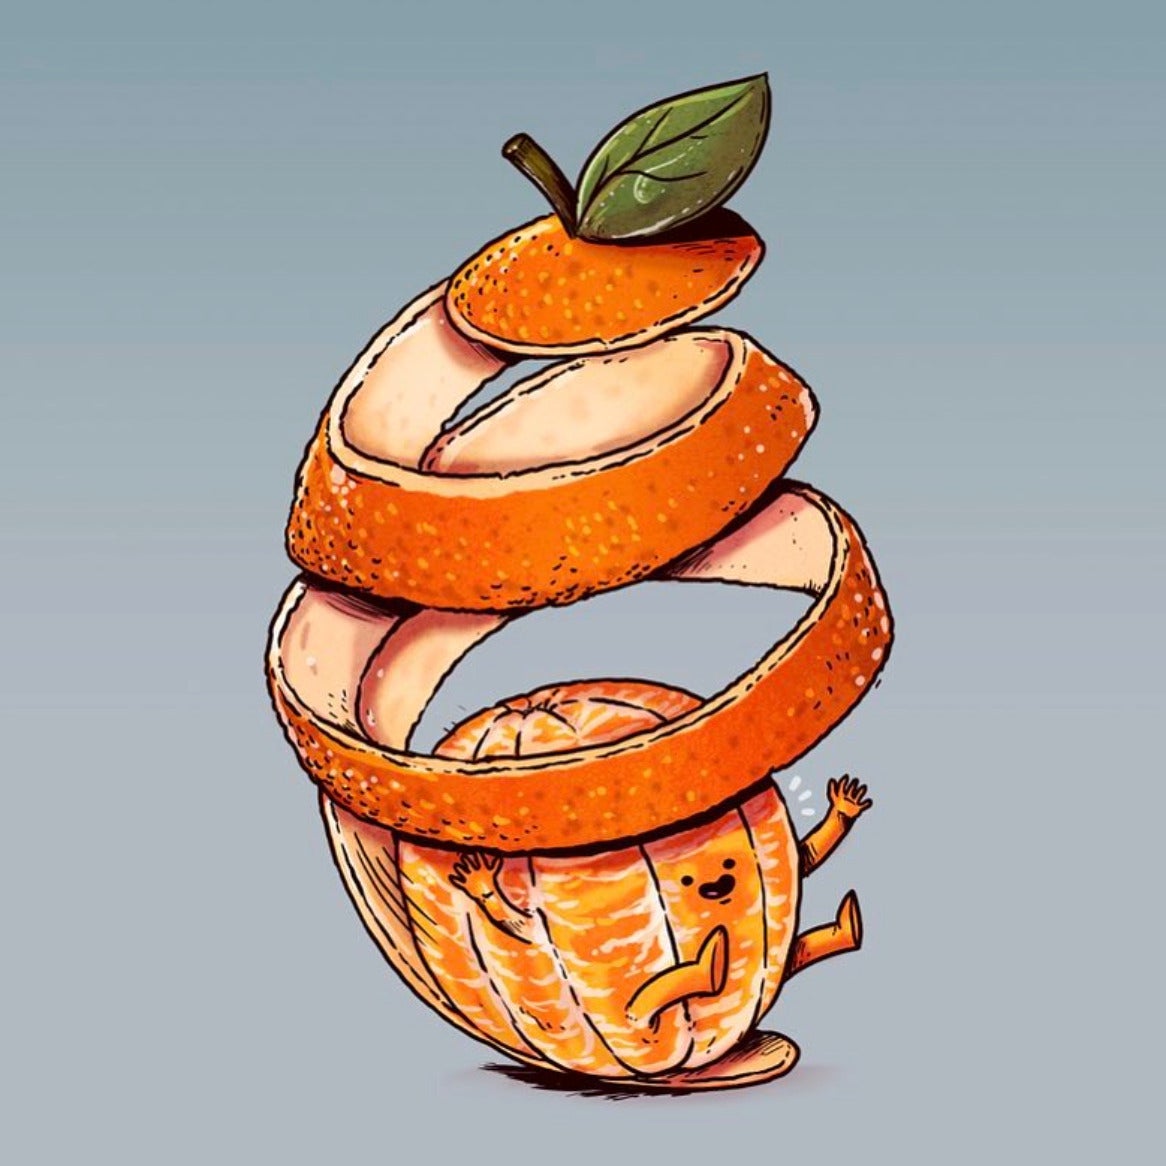 ภาพวาด การ์ตูน ผักผลไม้ ใช้ชีวิตแบบคน